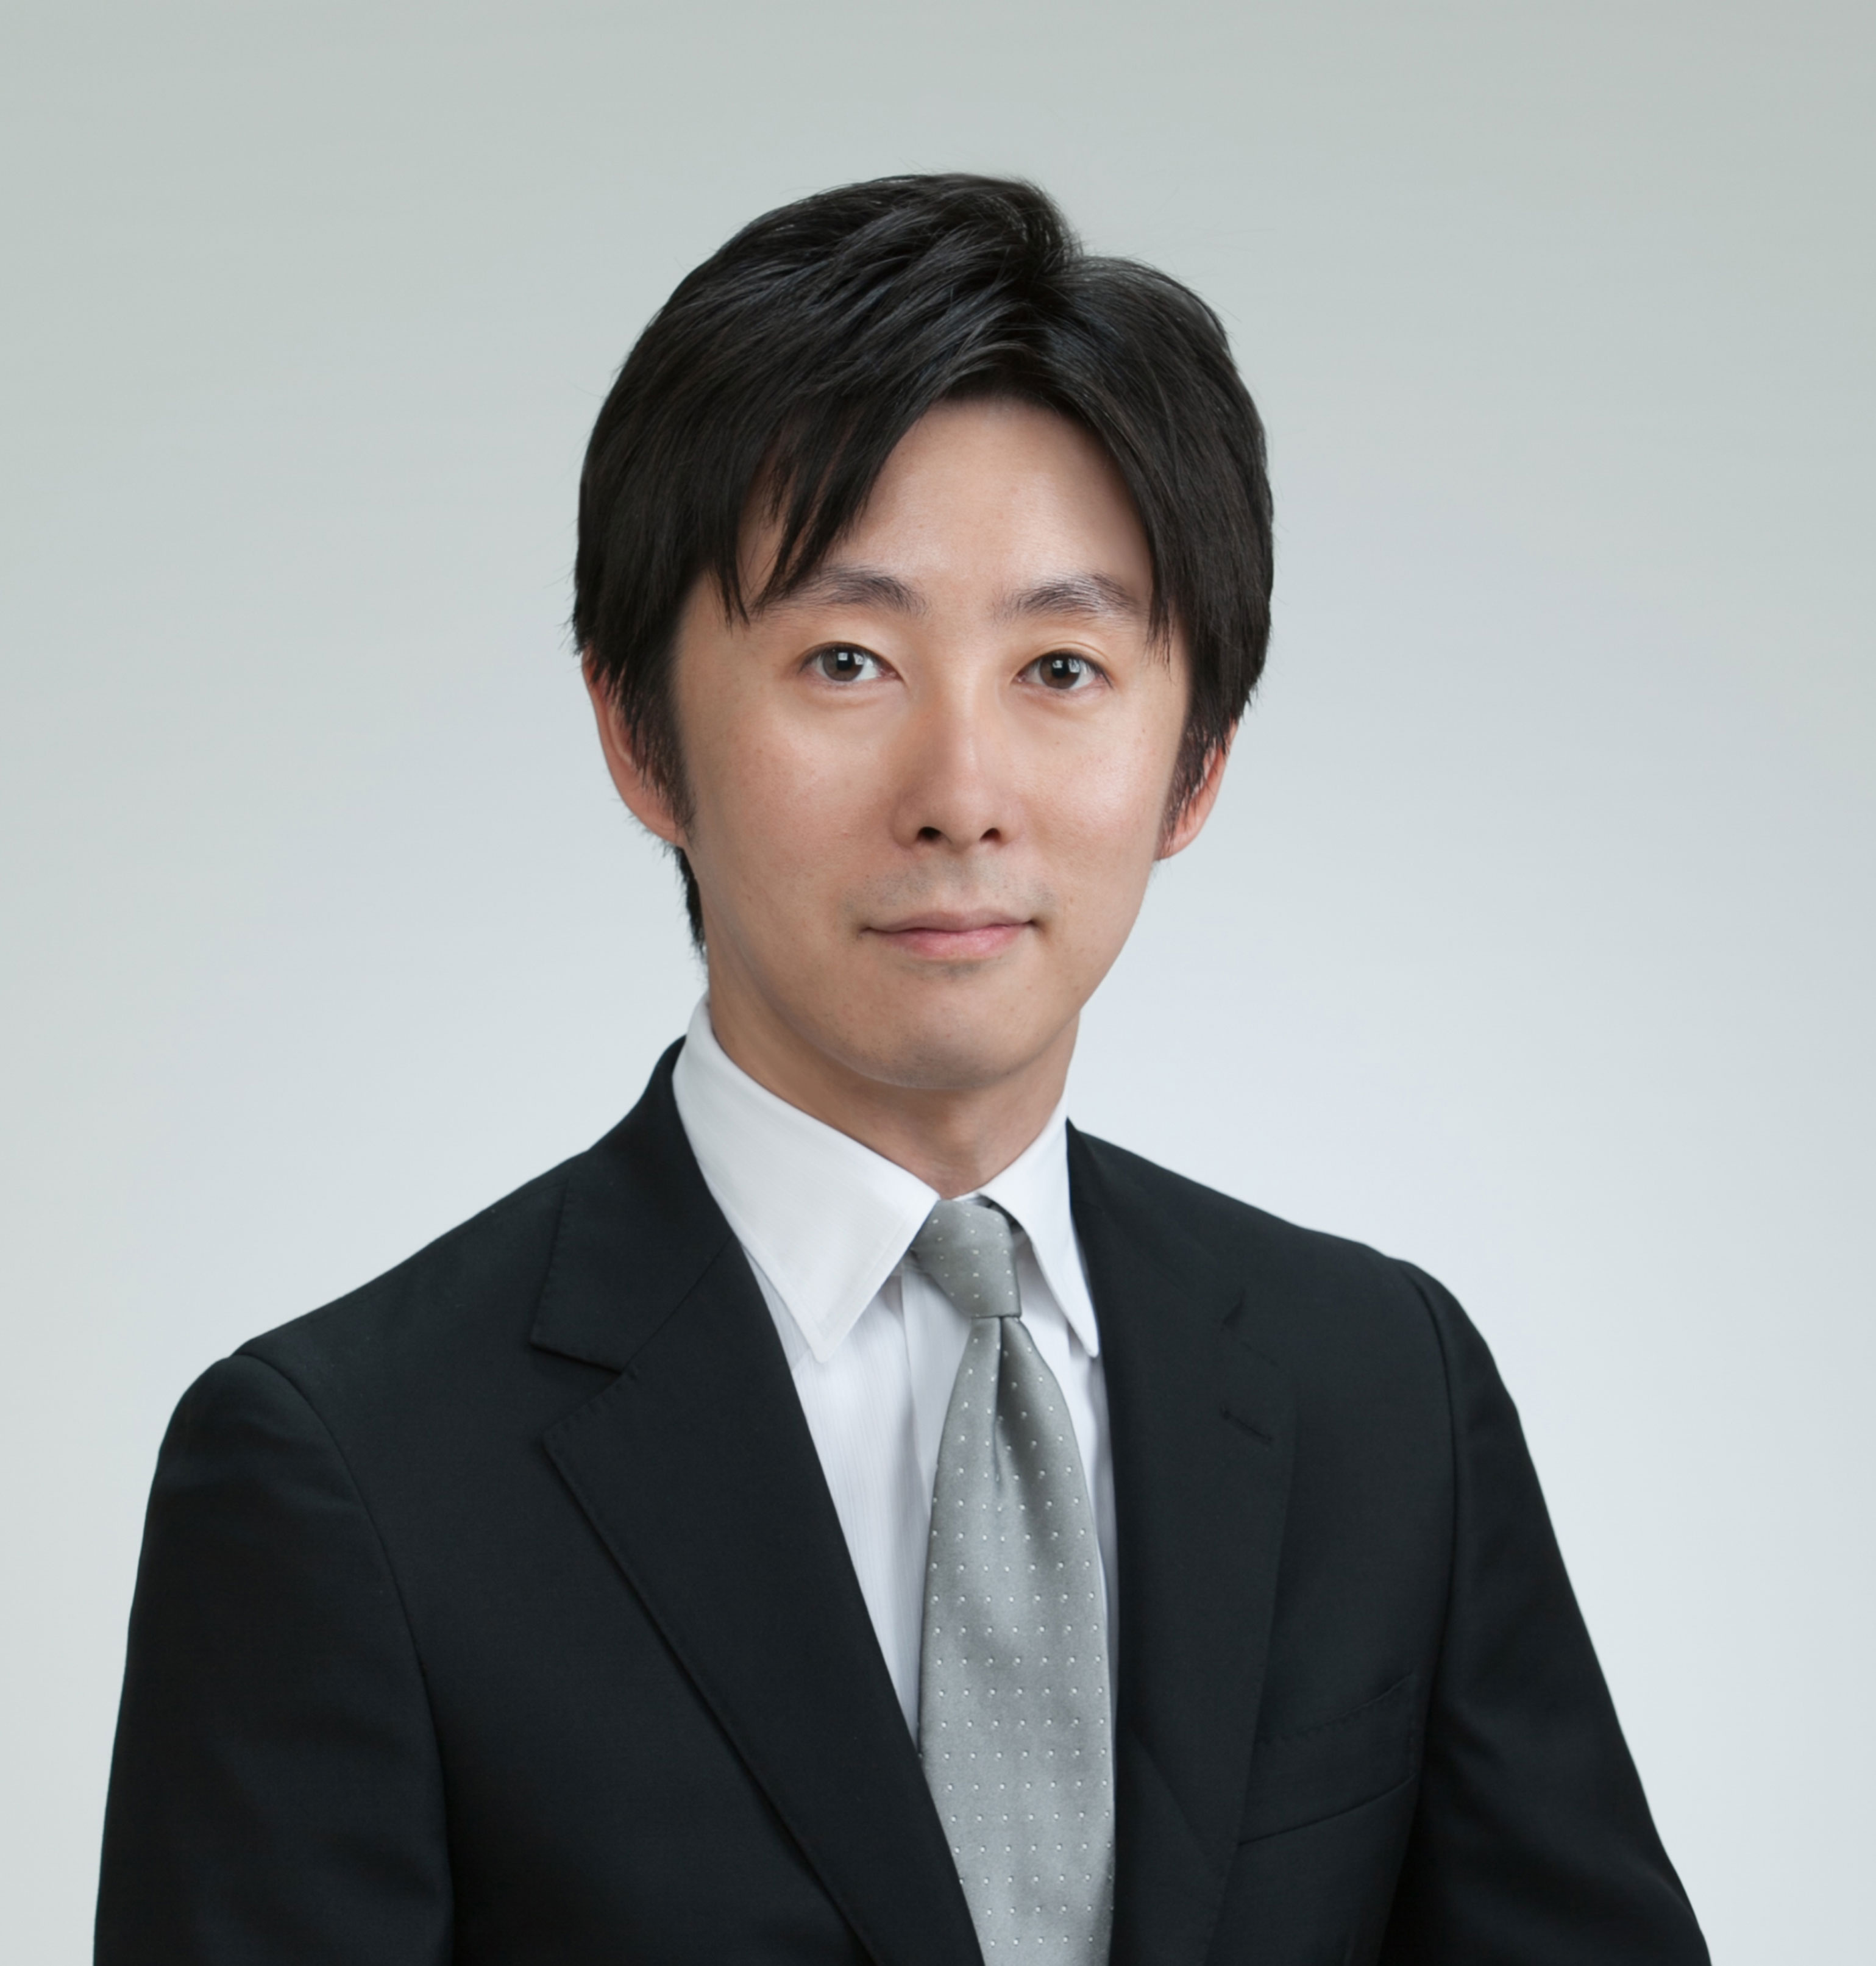 Tomohiro Morikawa